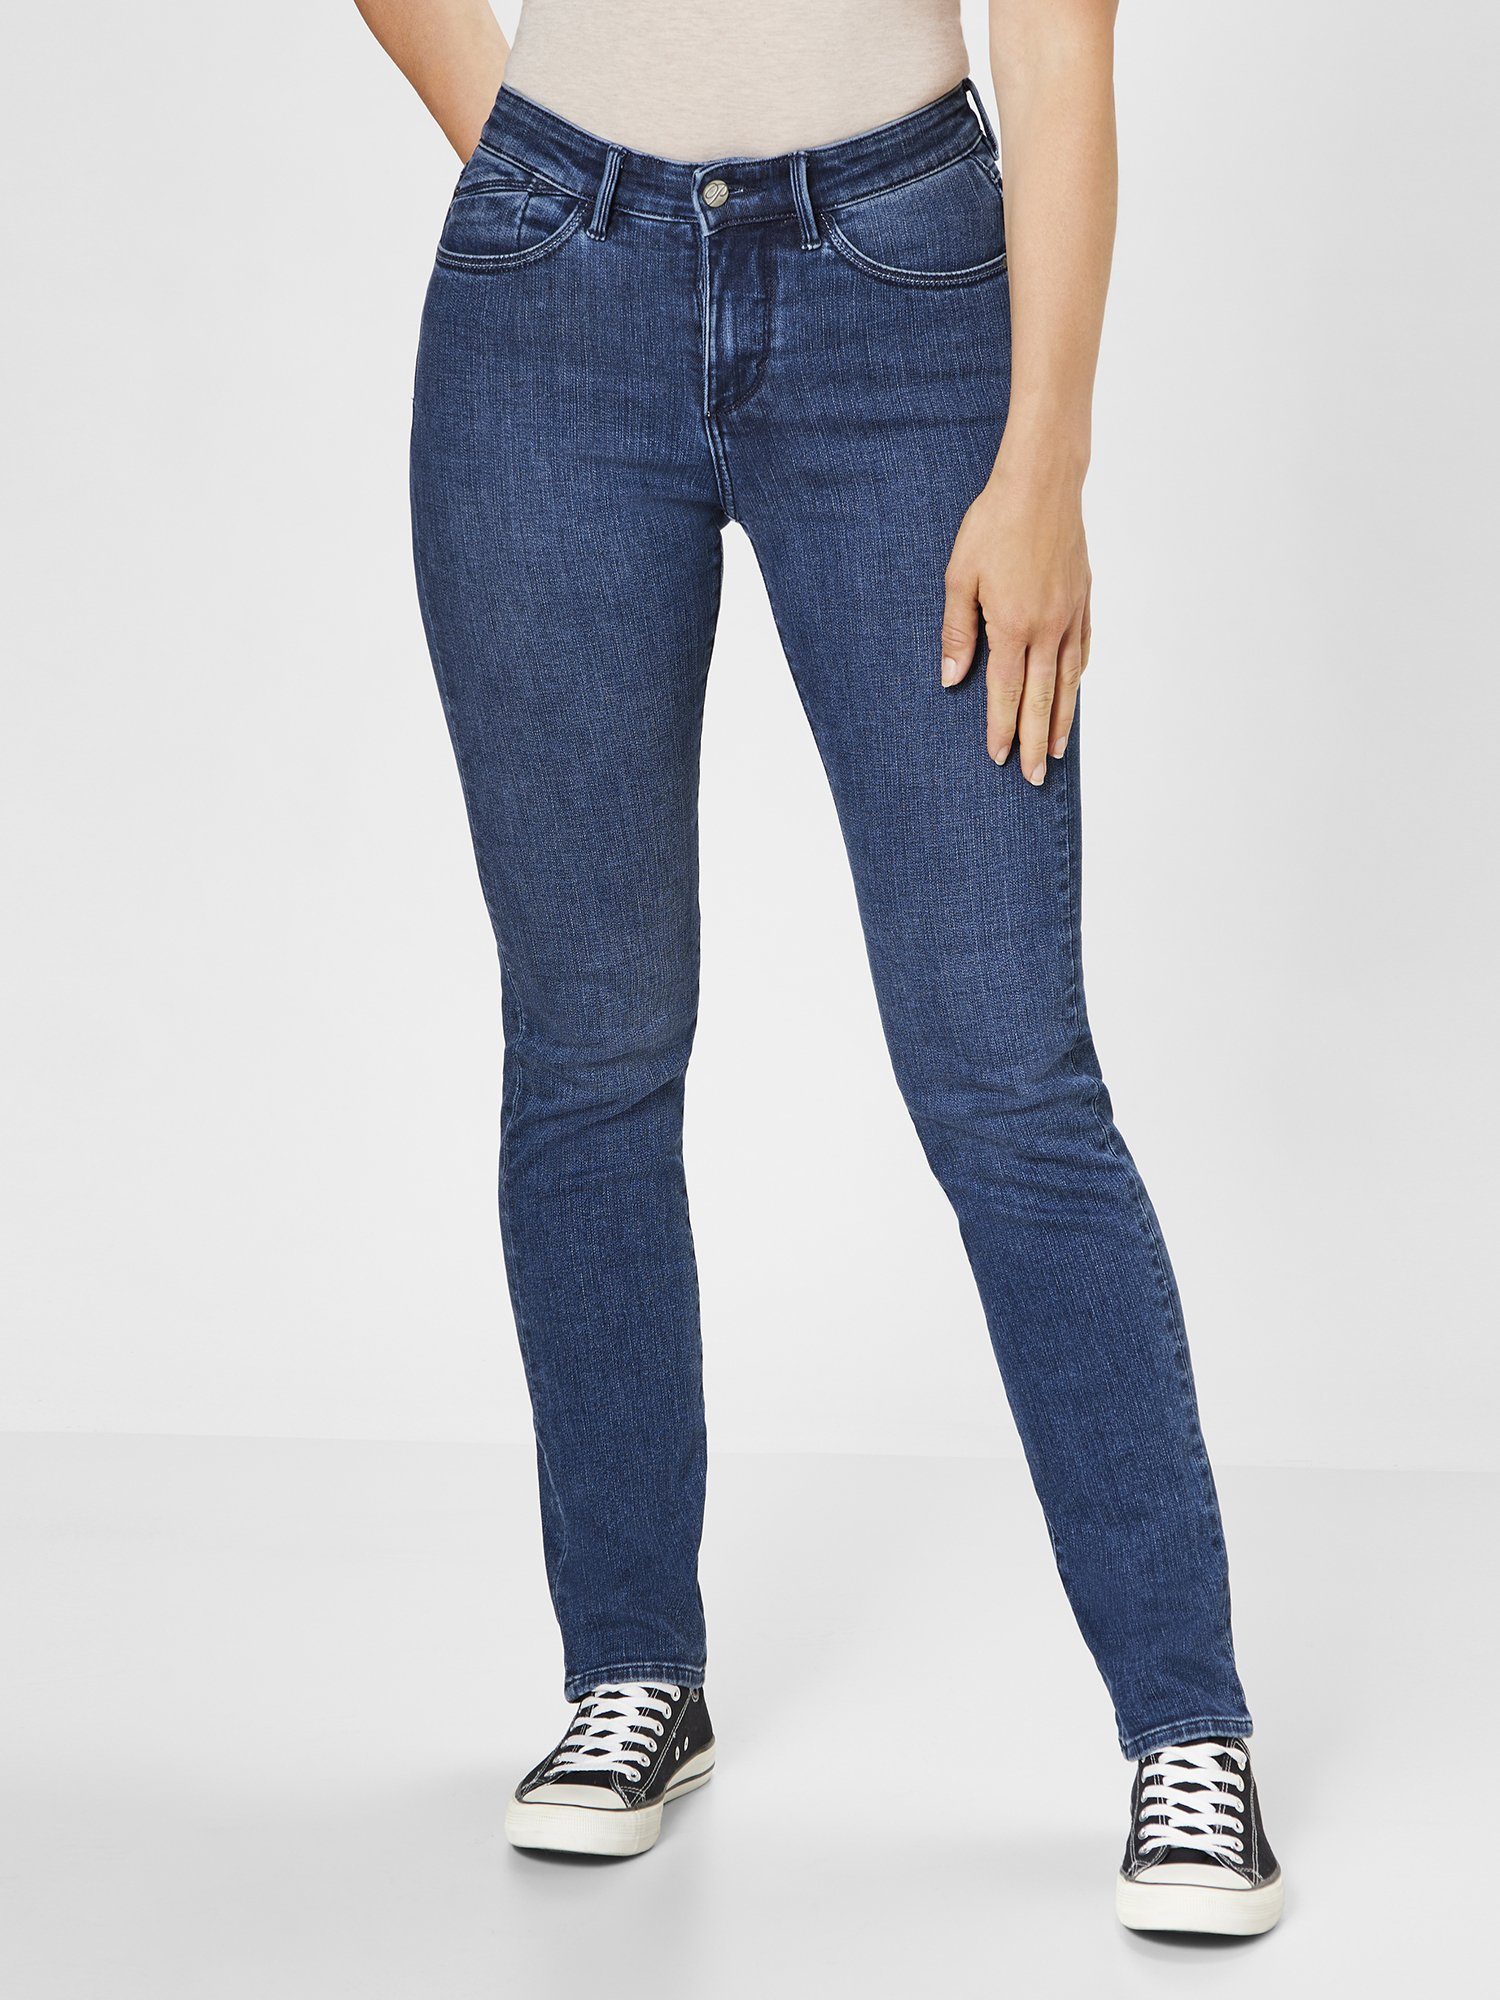 Paddock's Slim-fit-Jeans PAT Slim-Fit Soft Denim Jeans mit Stretchanteil dark blue stone use